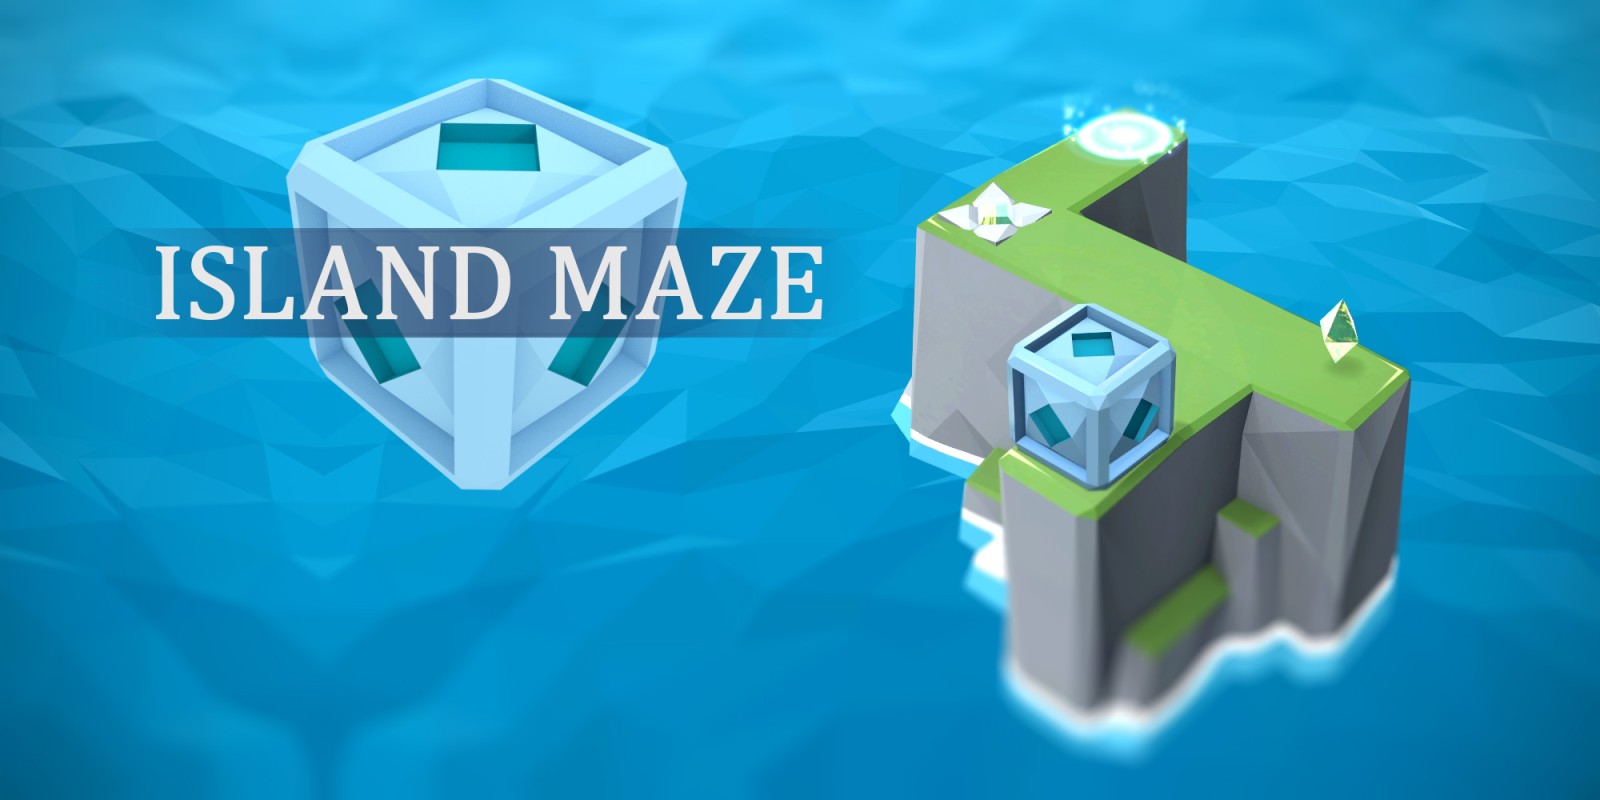 Island Maze